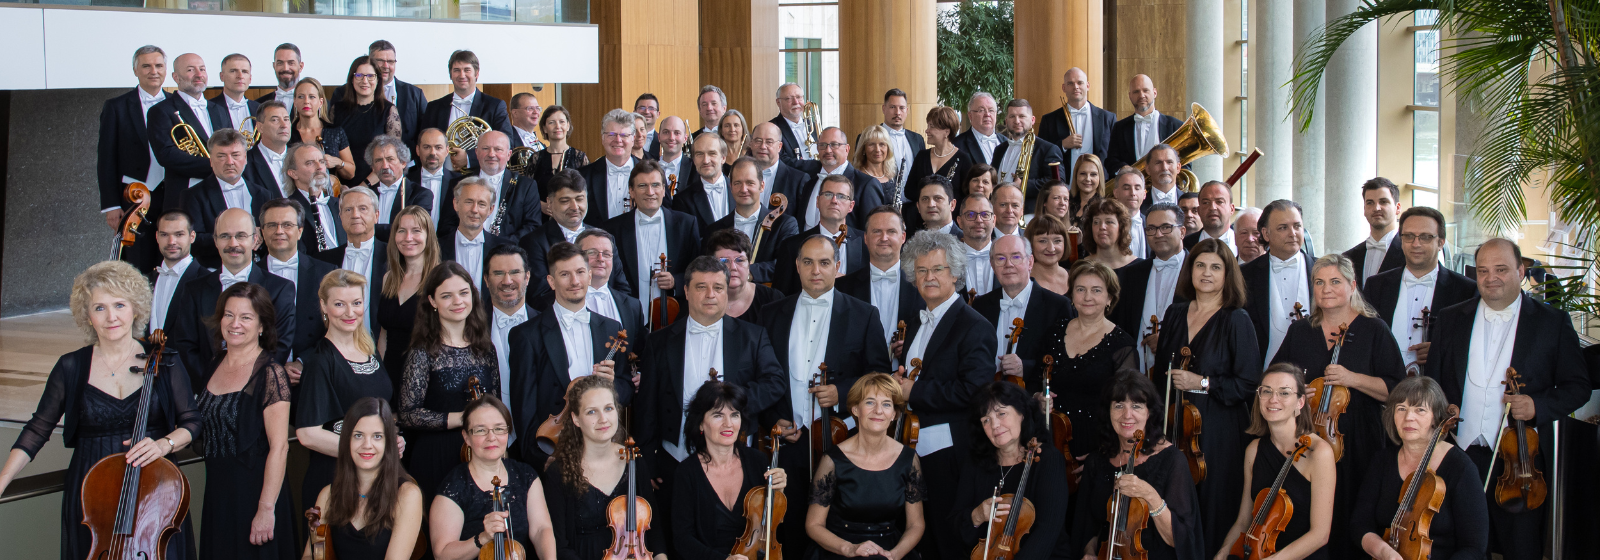 II. Haydneum Egyházzenei Fesztivál – A Nemzeti Filharmonikus Zenekar koncertje